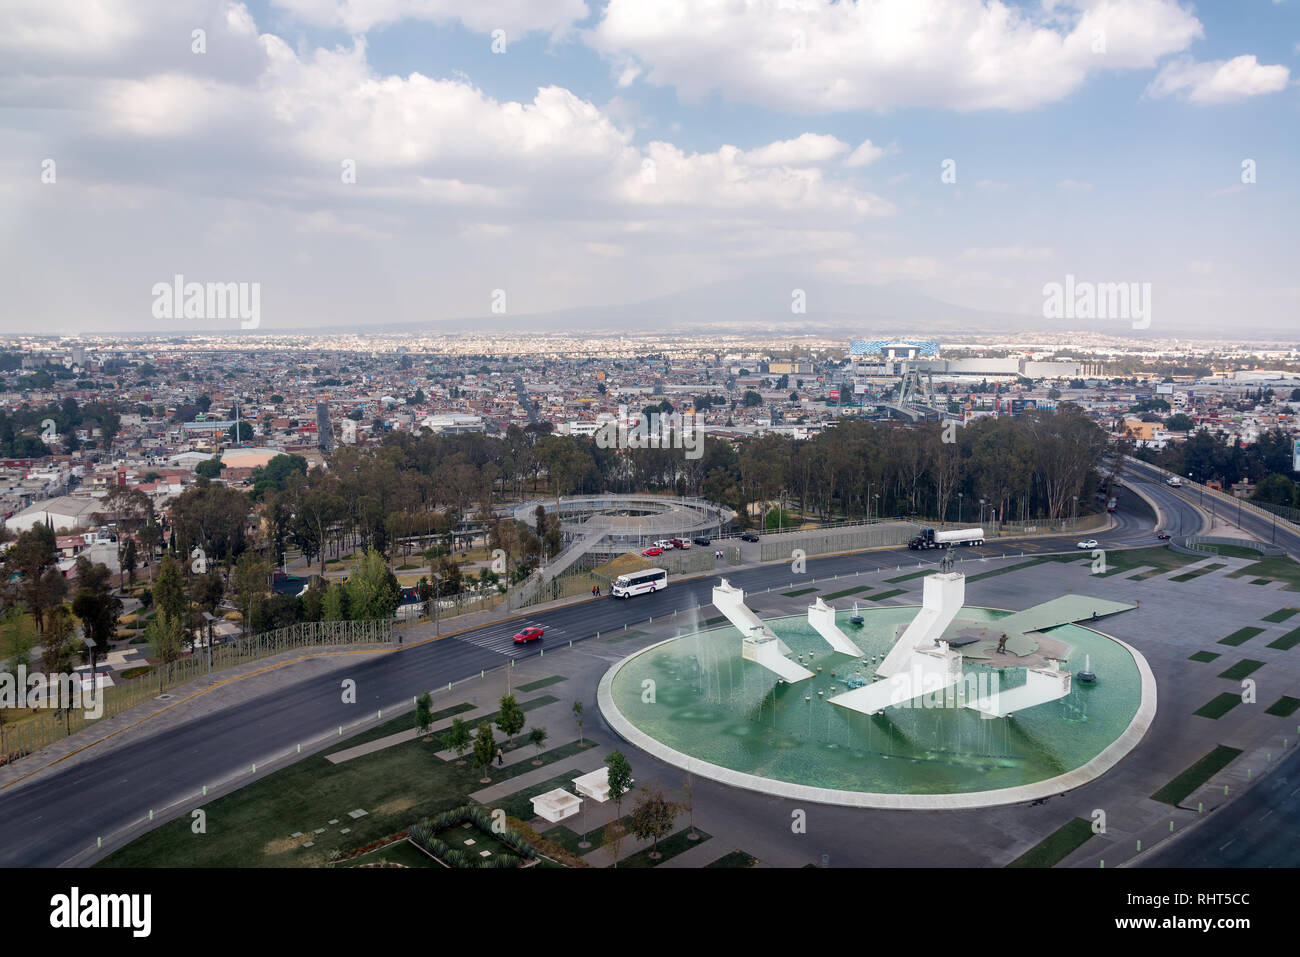 PUEBLA, Mexiko - März 2: Luftaufnahme eines Denkmals für Allgemeine Zaragoza in Puebla, Mexiko am 2. März 2017 Stockfoto